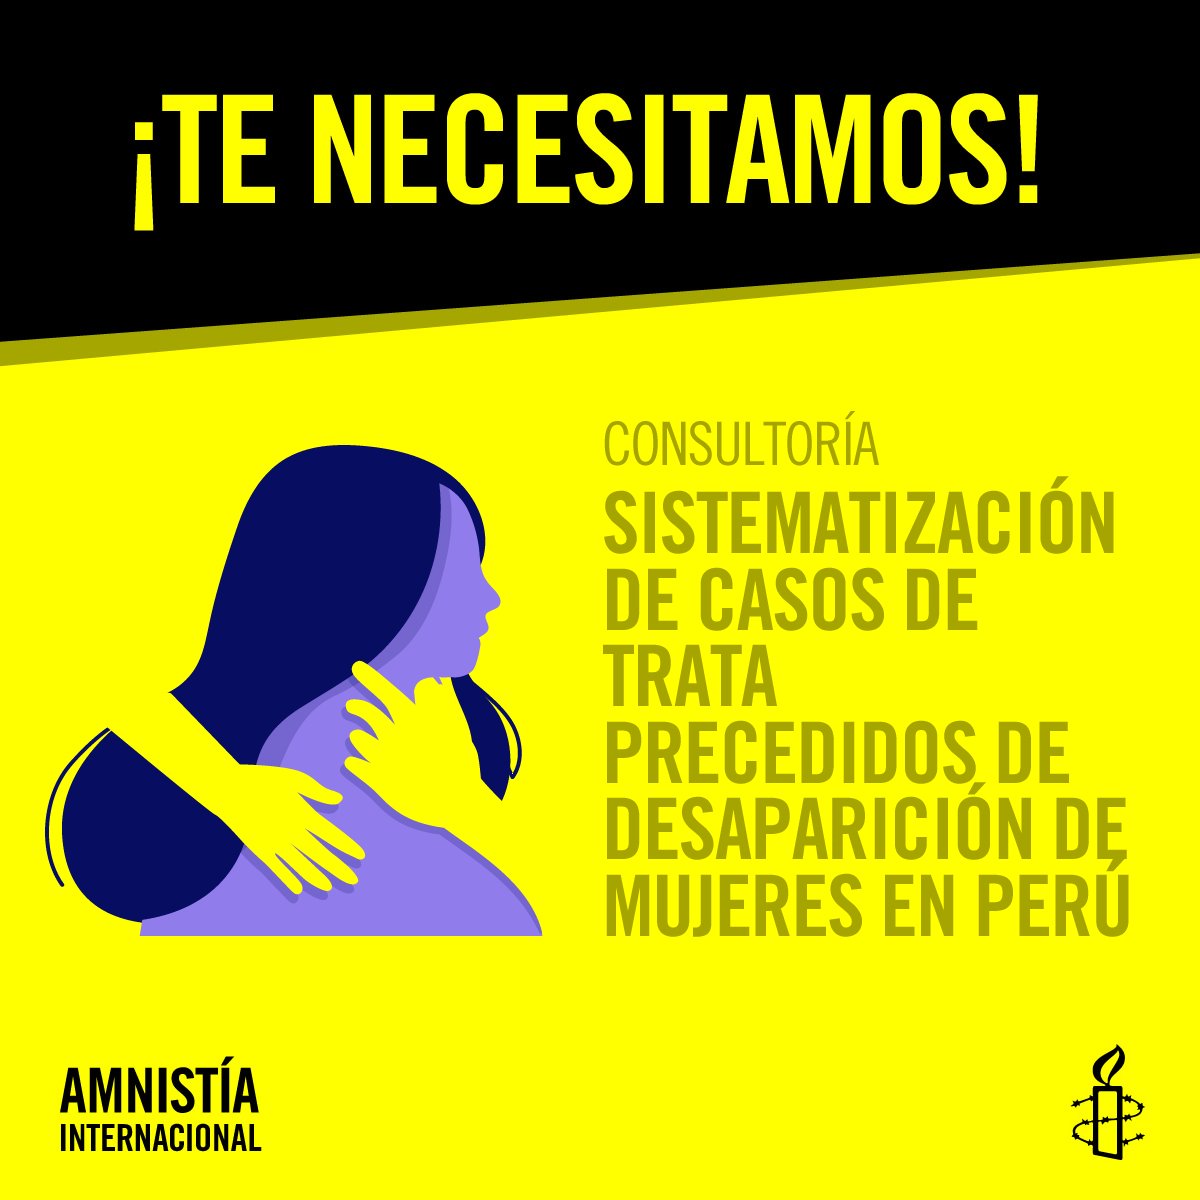 #TeNecesitamos 🫵 Postula a nuestra consultoría para la Sistematización de casos de trata precedidos de desaparición de mujeres en el Perú. ¡Tienes hasta el 7 de noviembre! Lee más: amnistia.org.pe/convocatorias/…